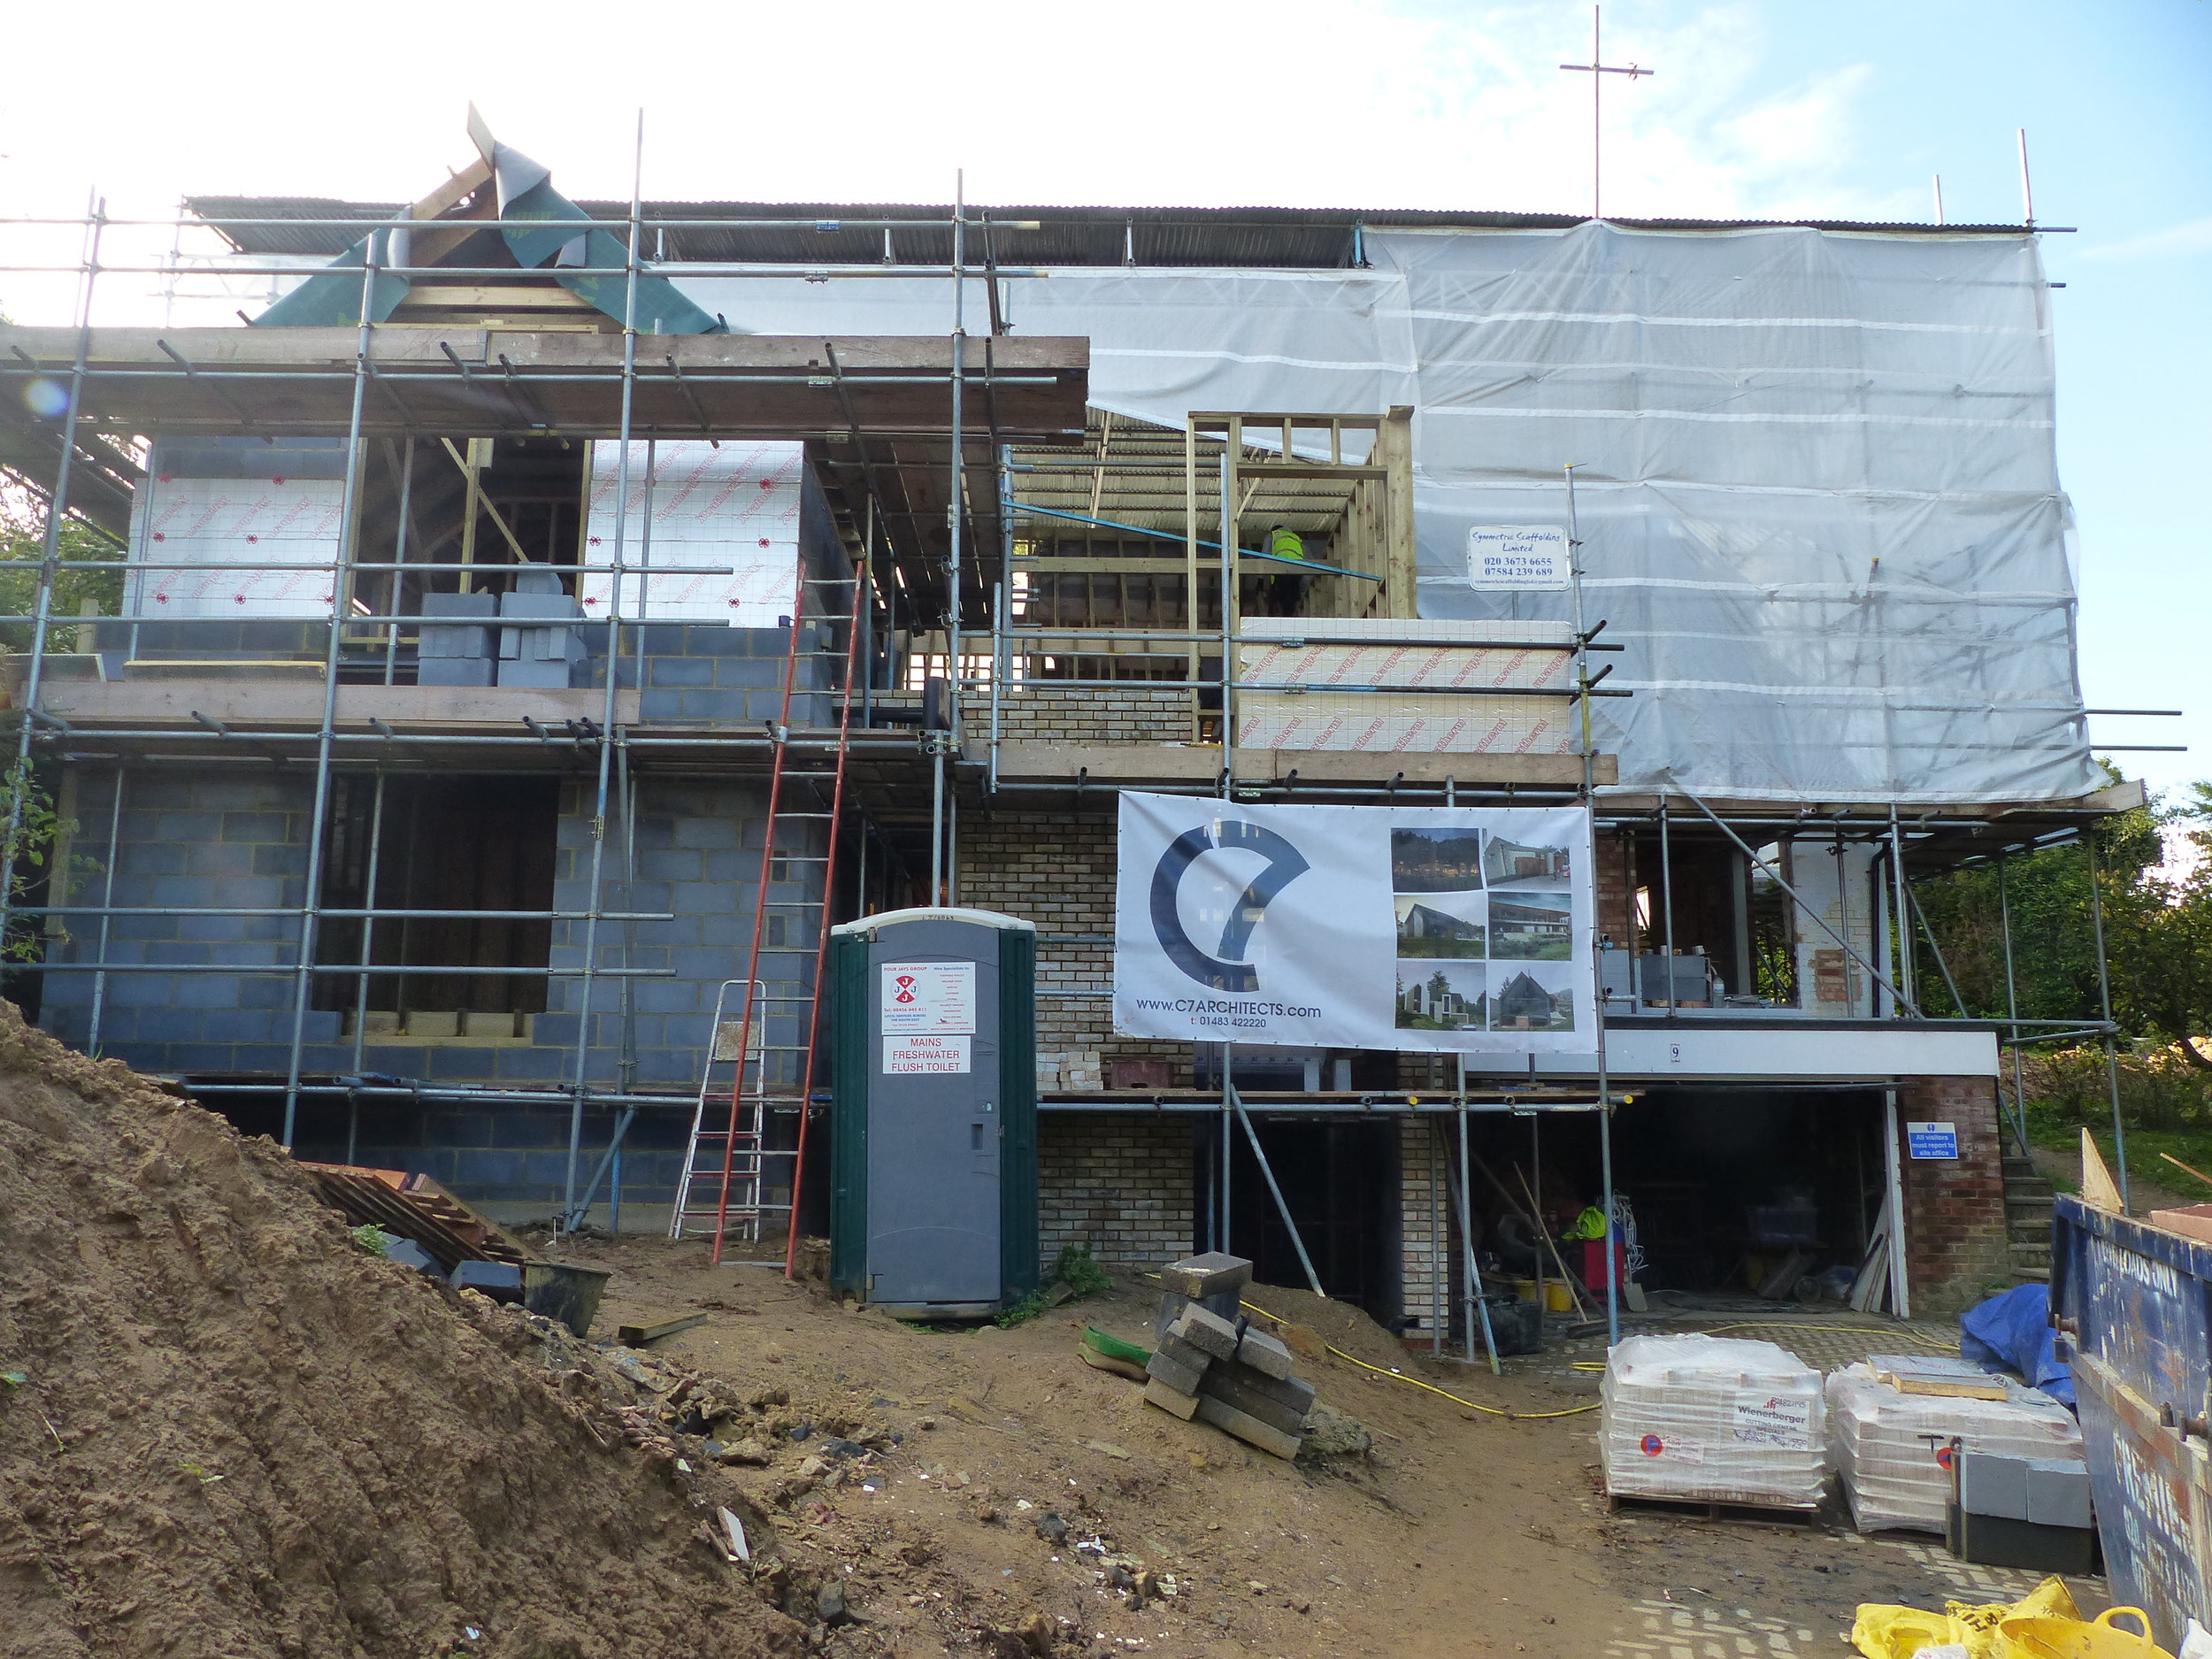 Refurbishment of a private dwelling in Esher, Surrey. (Copy)